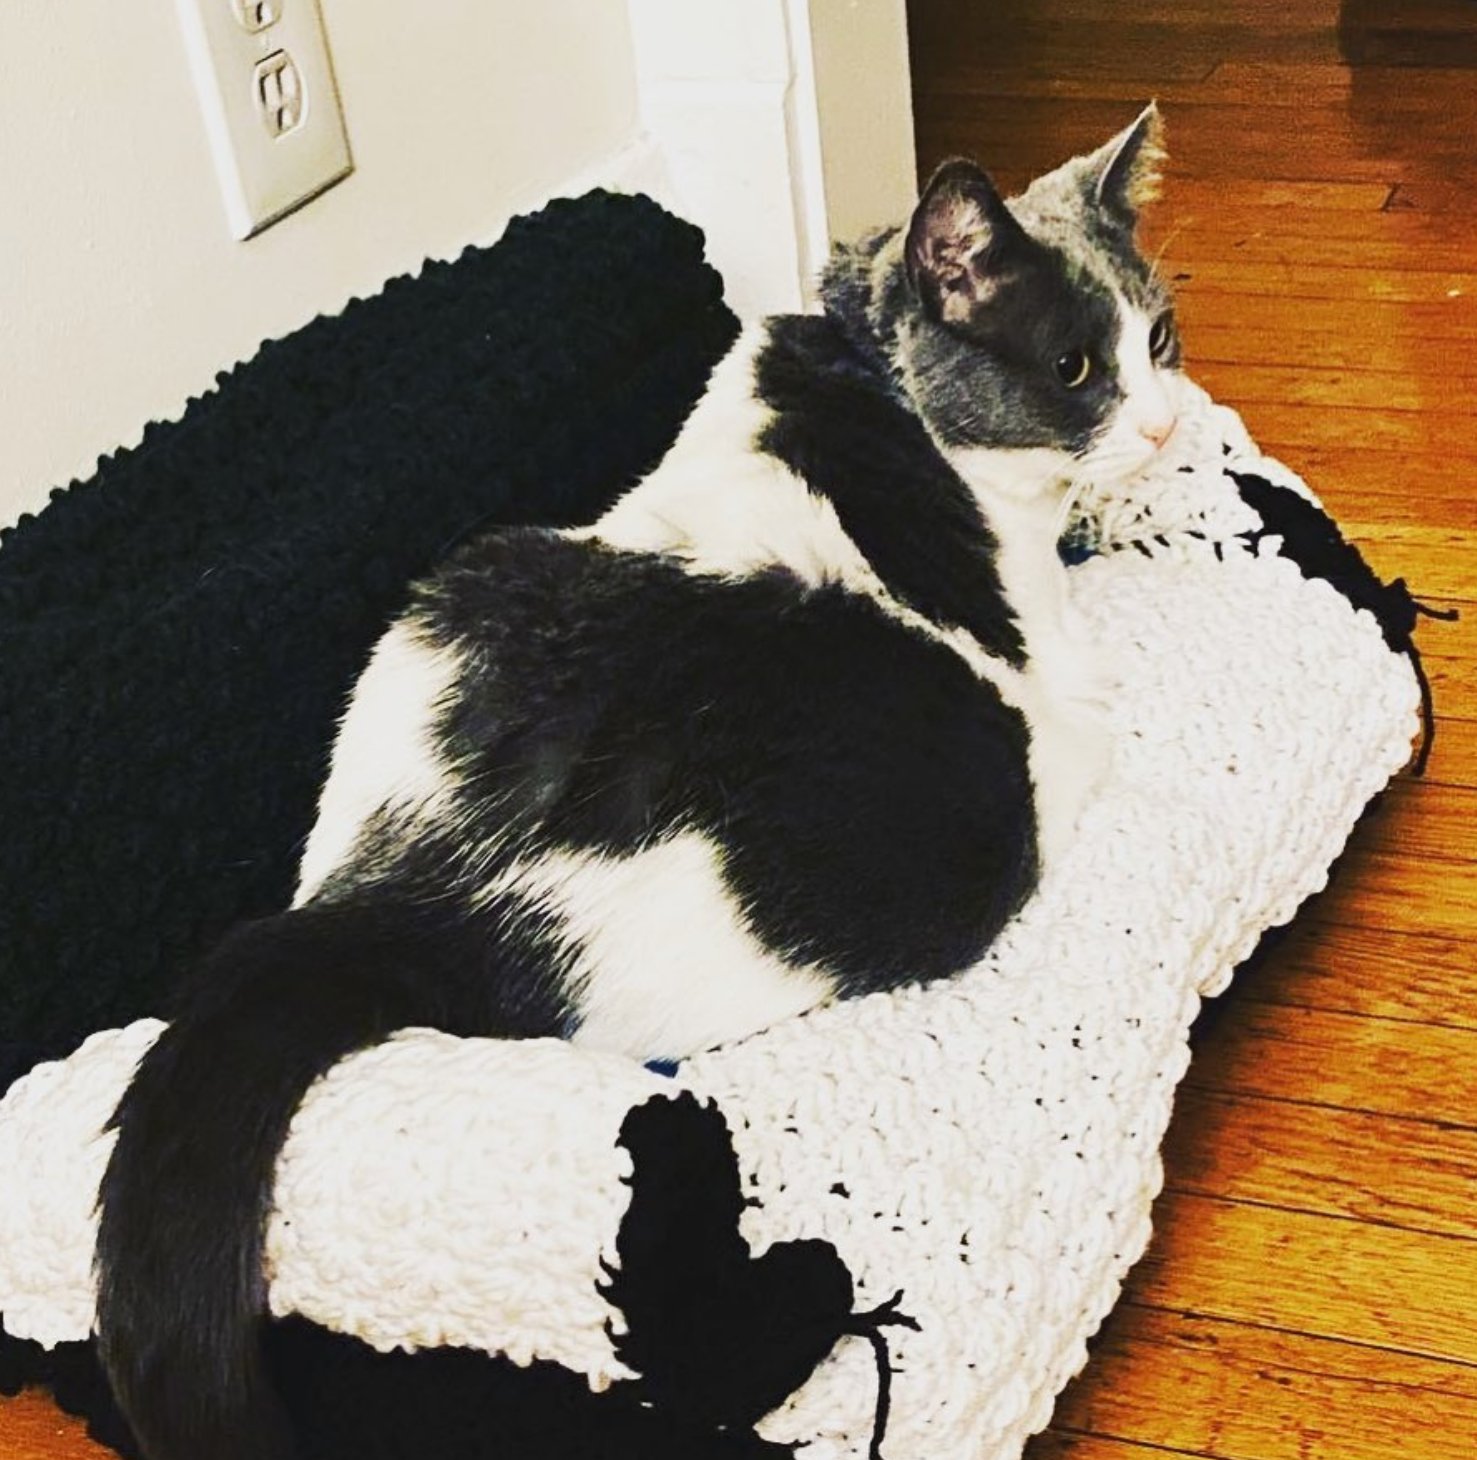 Хозяева вяжут для своих котов милые диванчики